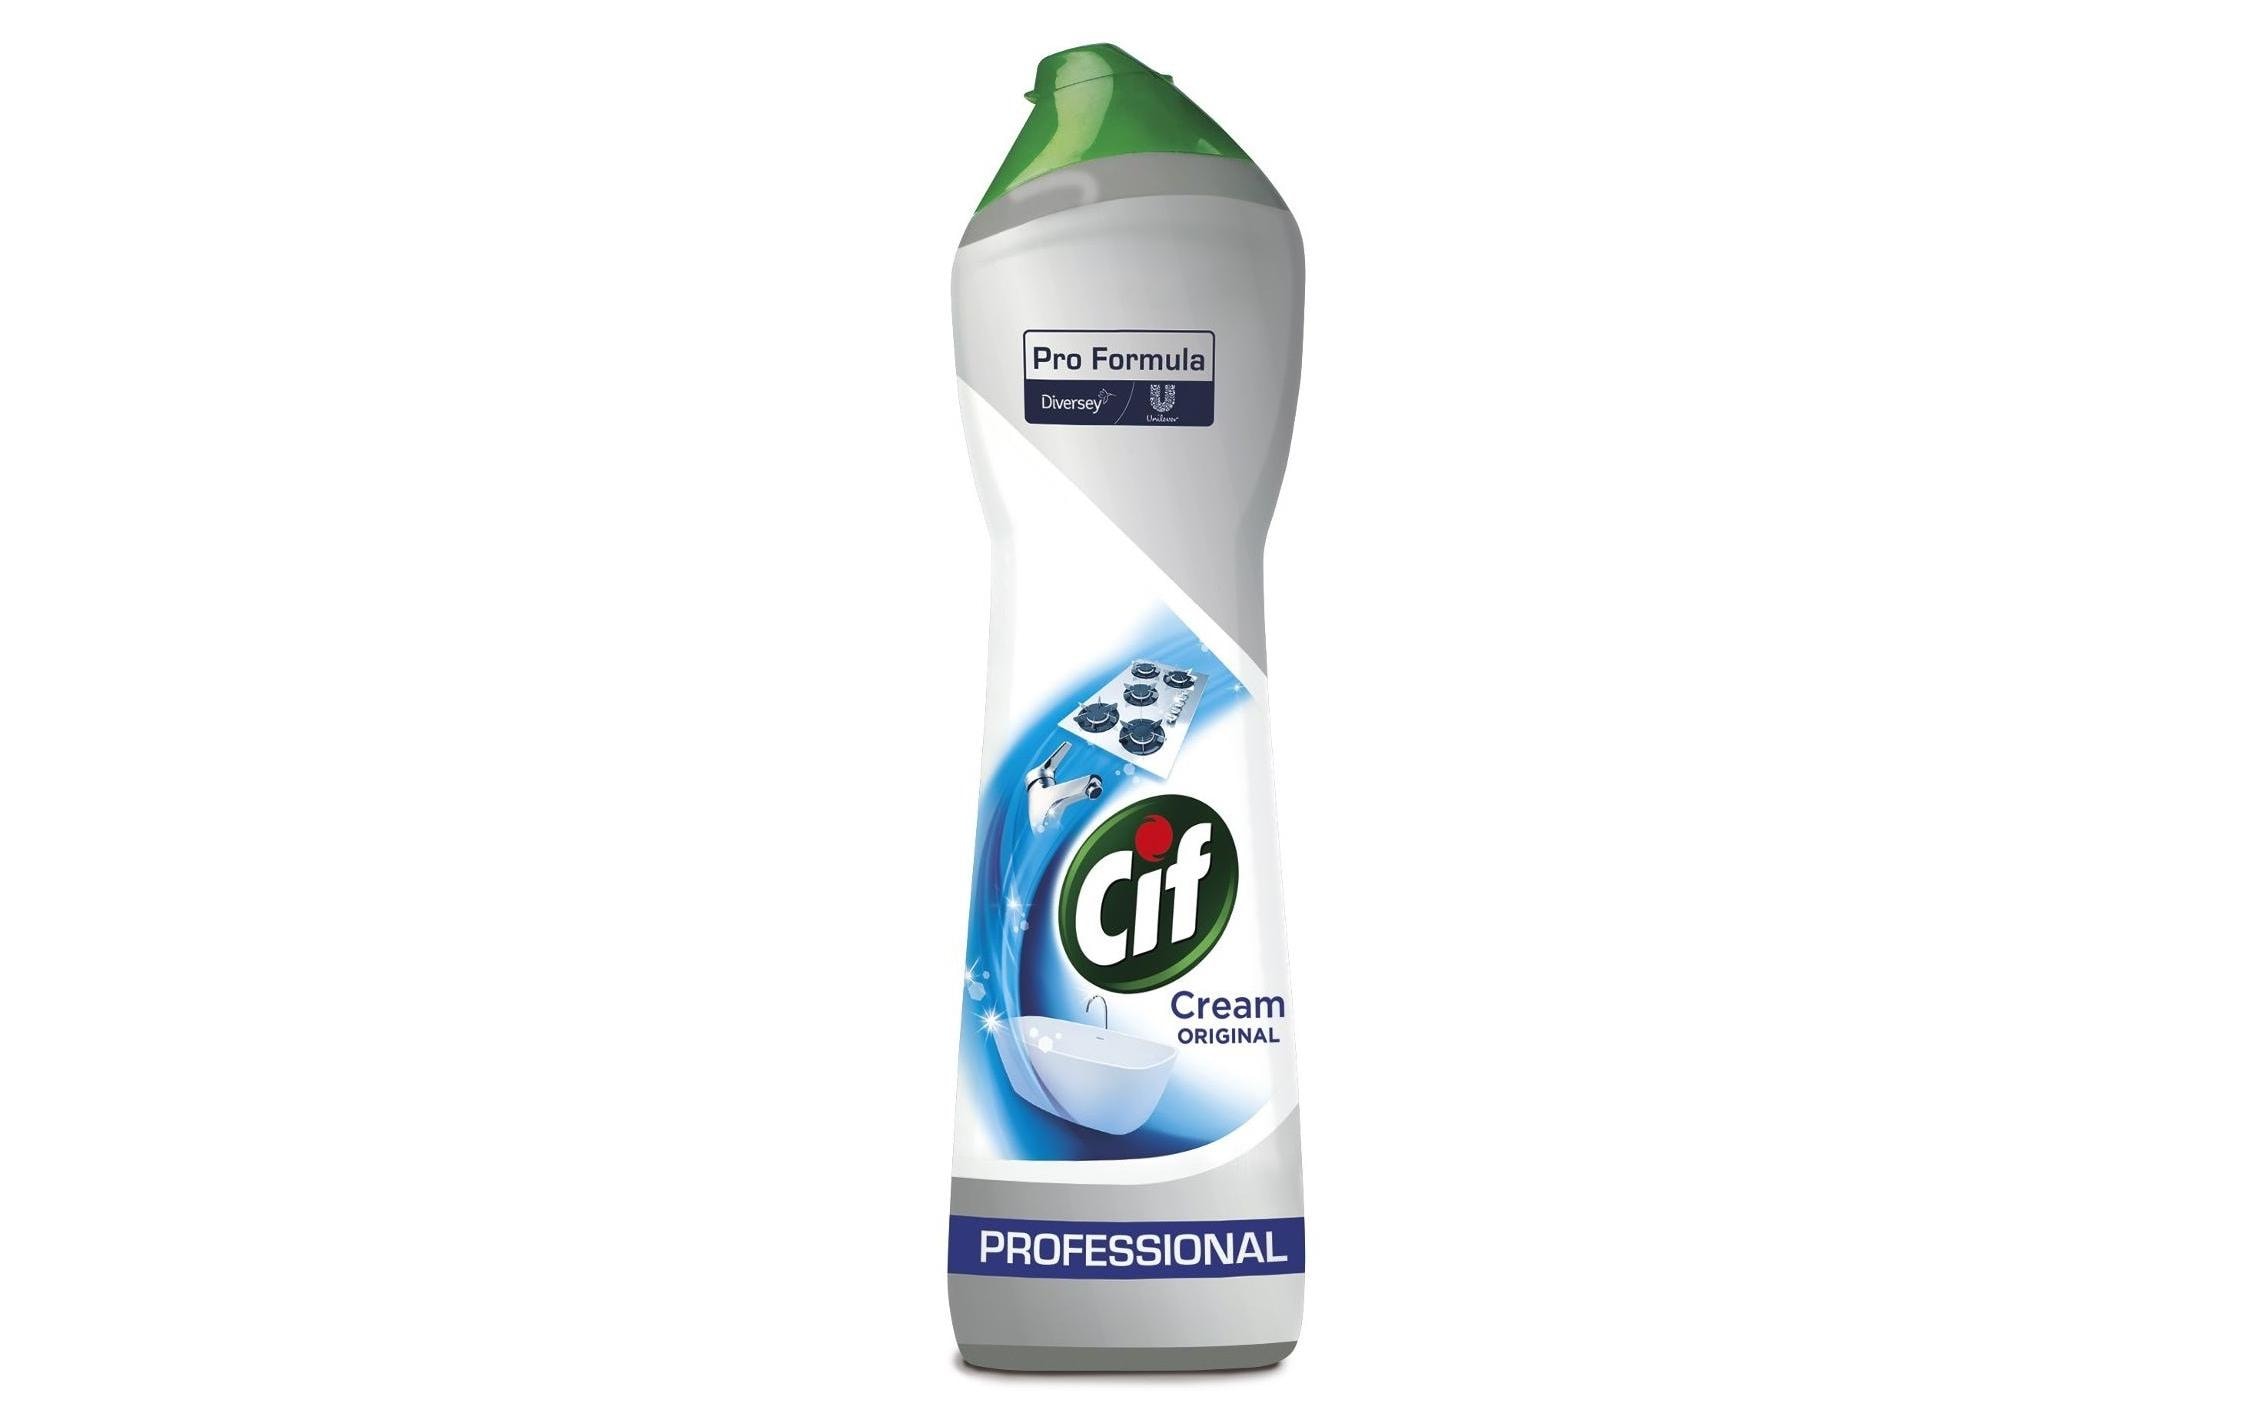 Diversey Pro Formula Küchenreiniger Cif Professional Cream 750 ml